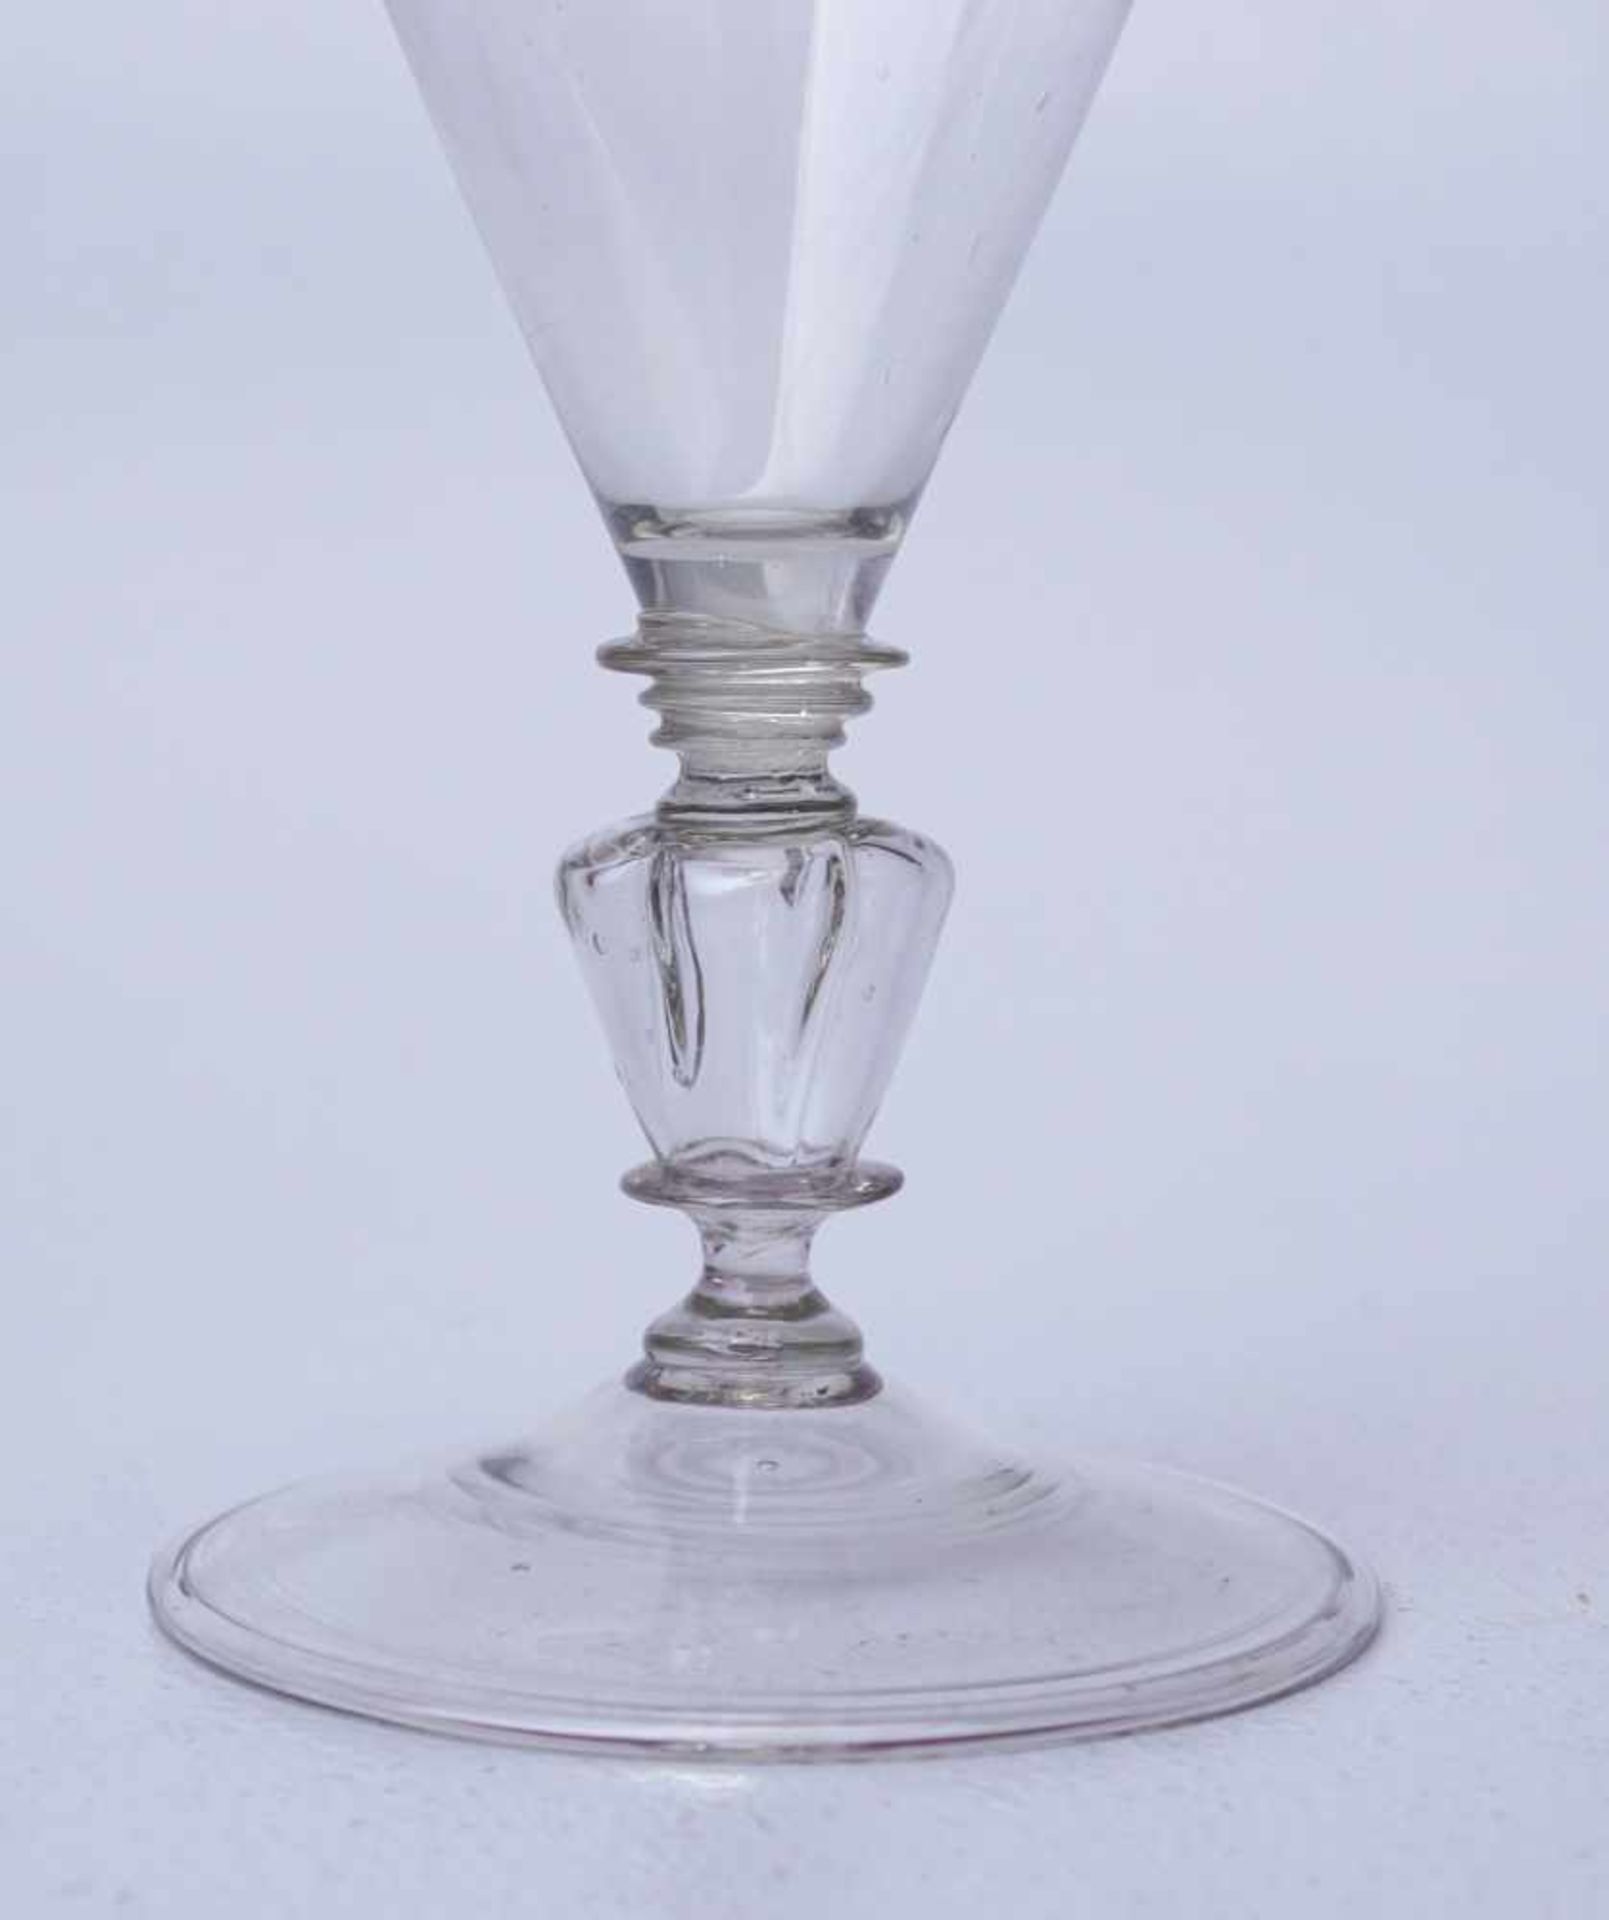 Seltenes Trichterglas des 17. Jhd.Farbloses Glas, geblasen, breiter Fuß mit Standring, Schaft - Bild 2 aus 3